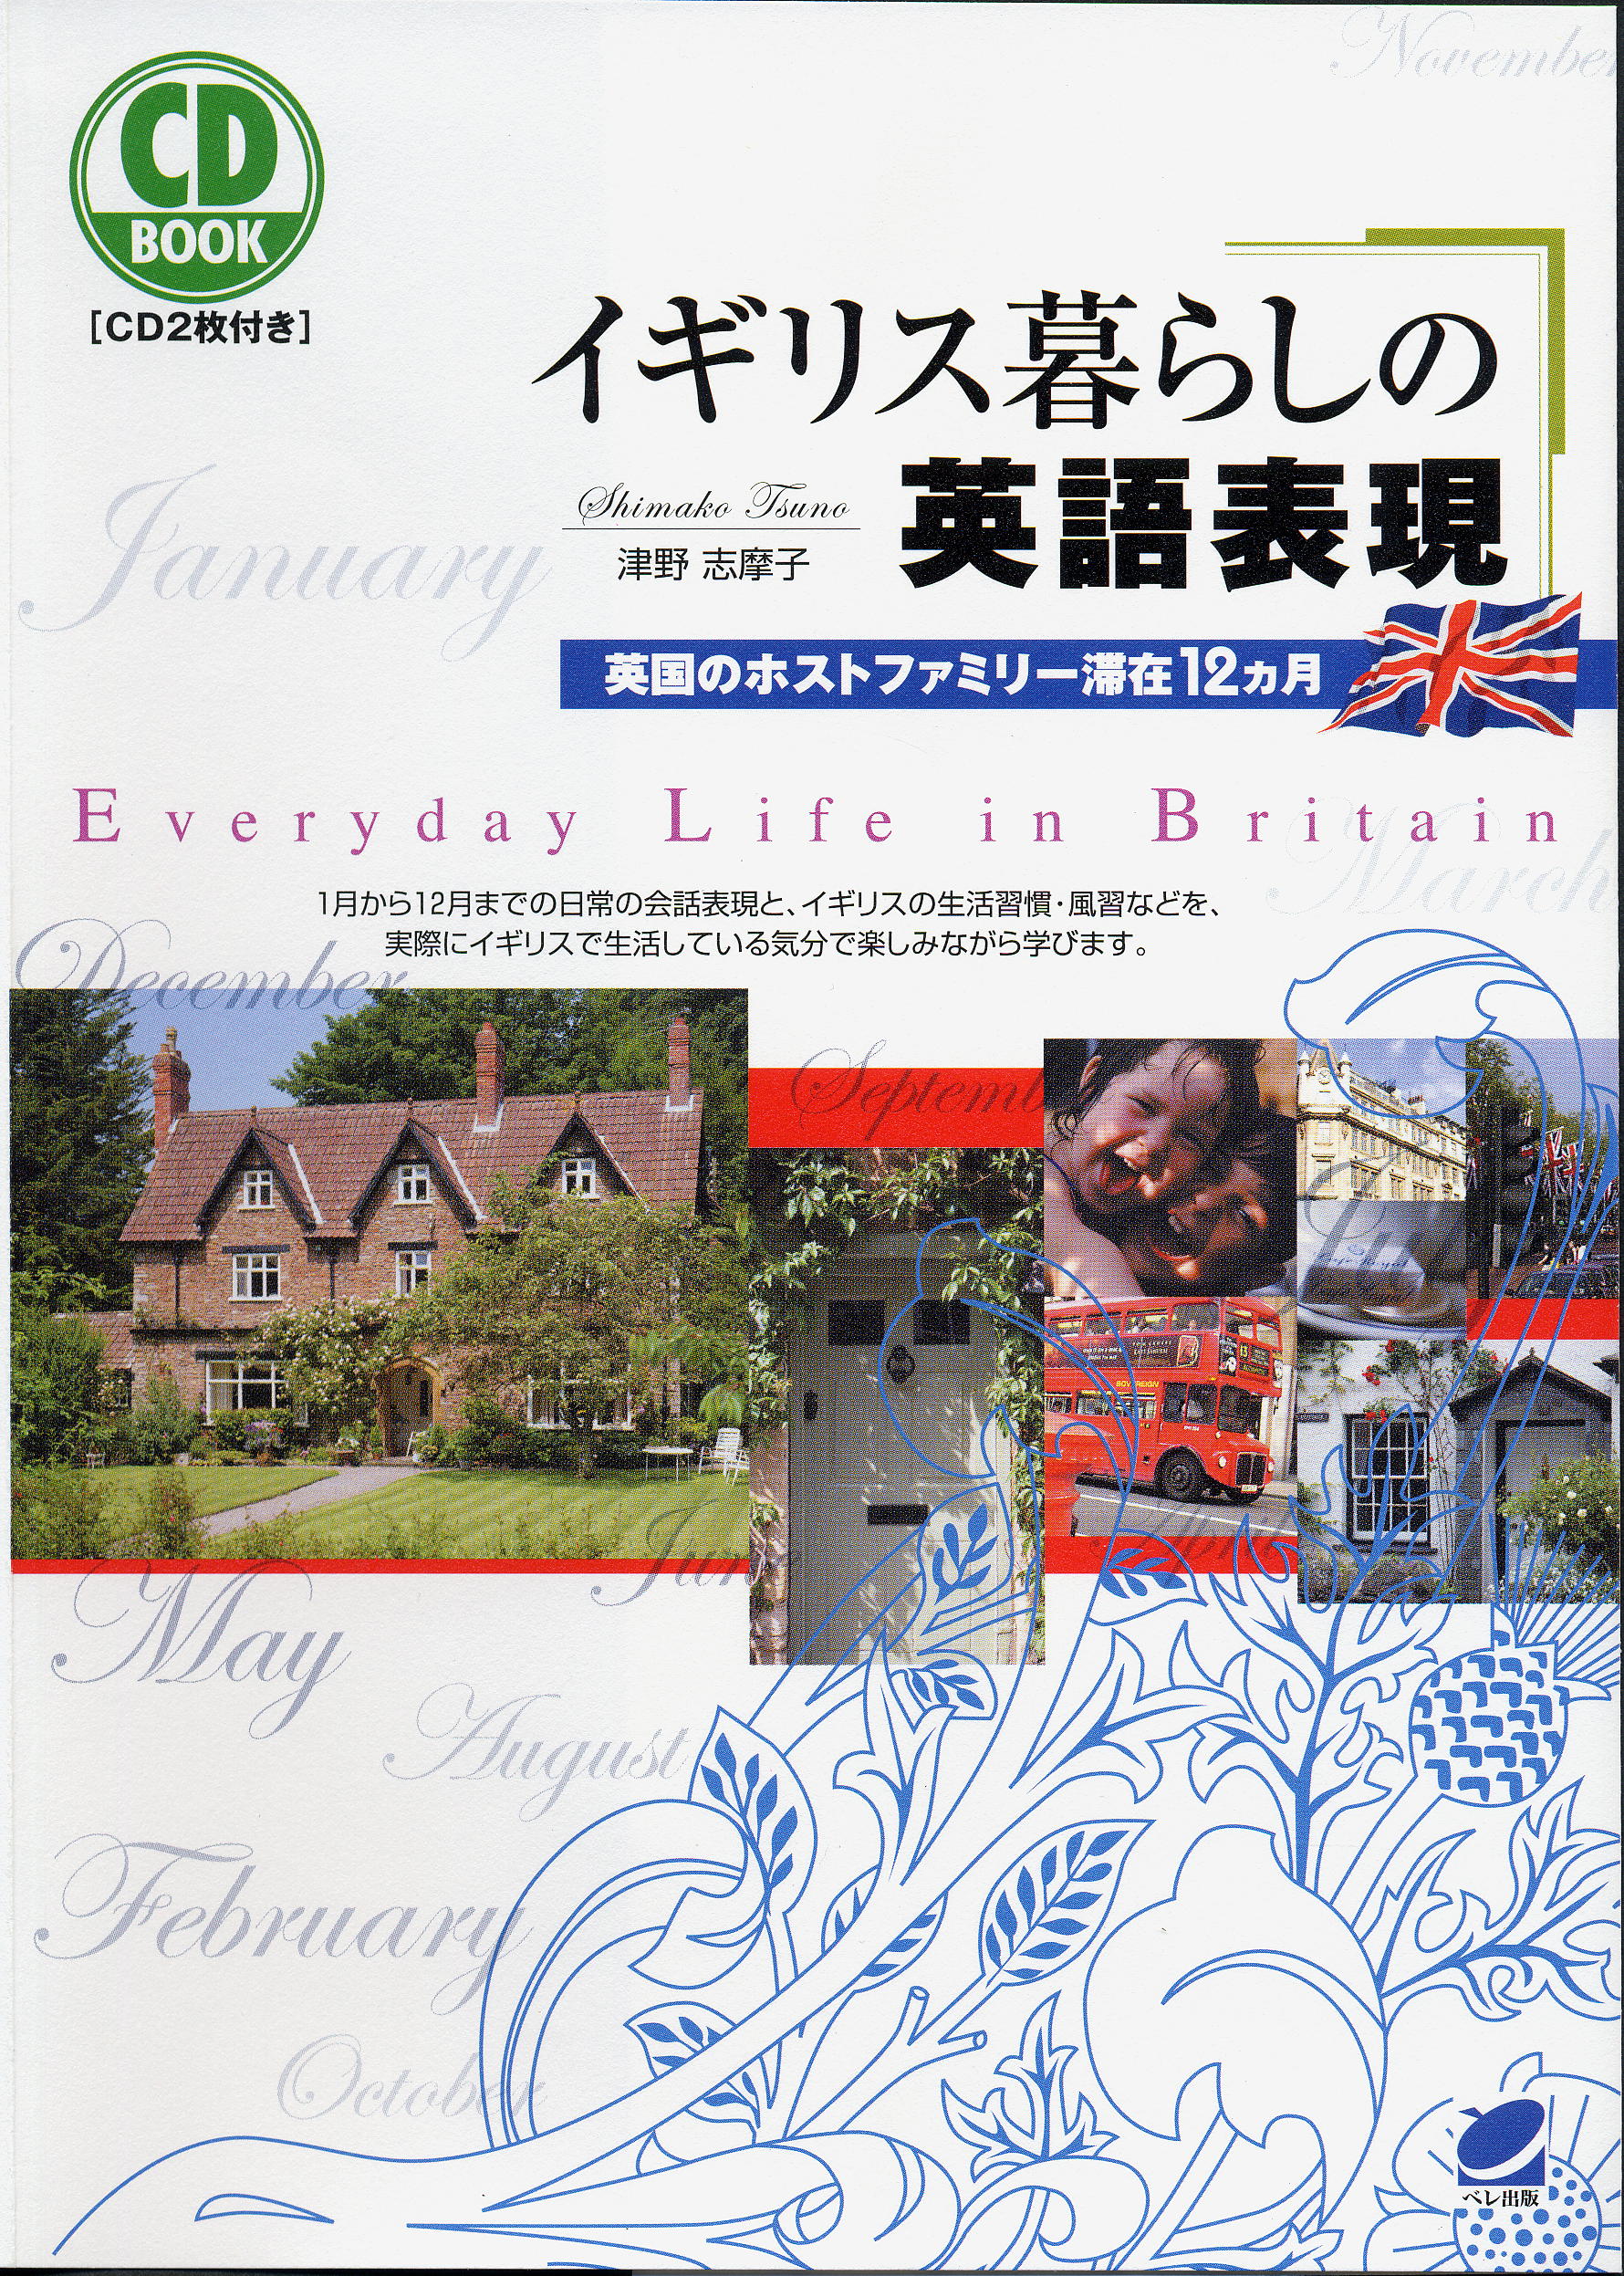 イギリス暮らしの英語表現 CD BOOK - いつも、学ぶ人の近くに【ベレ出版】